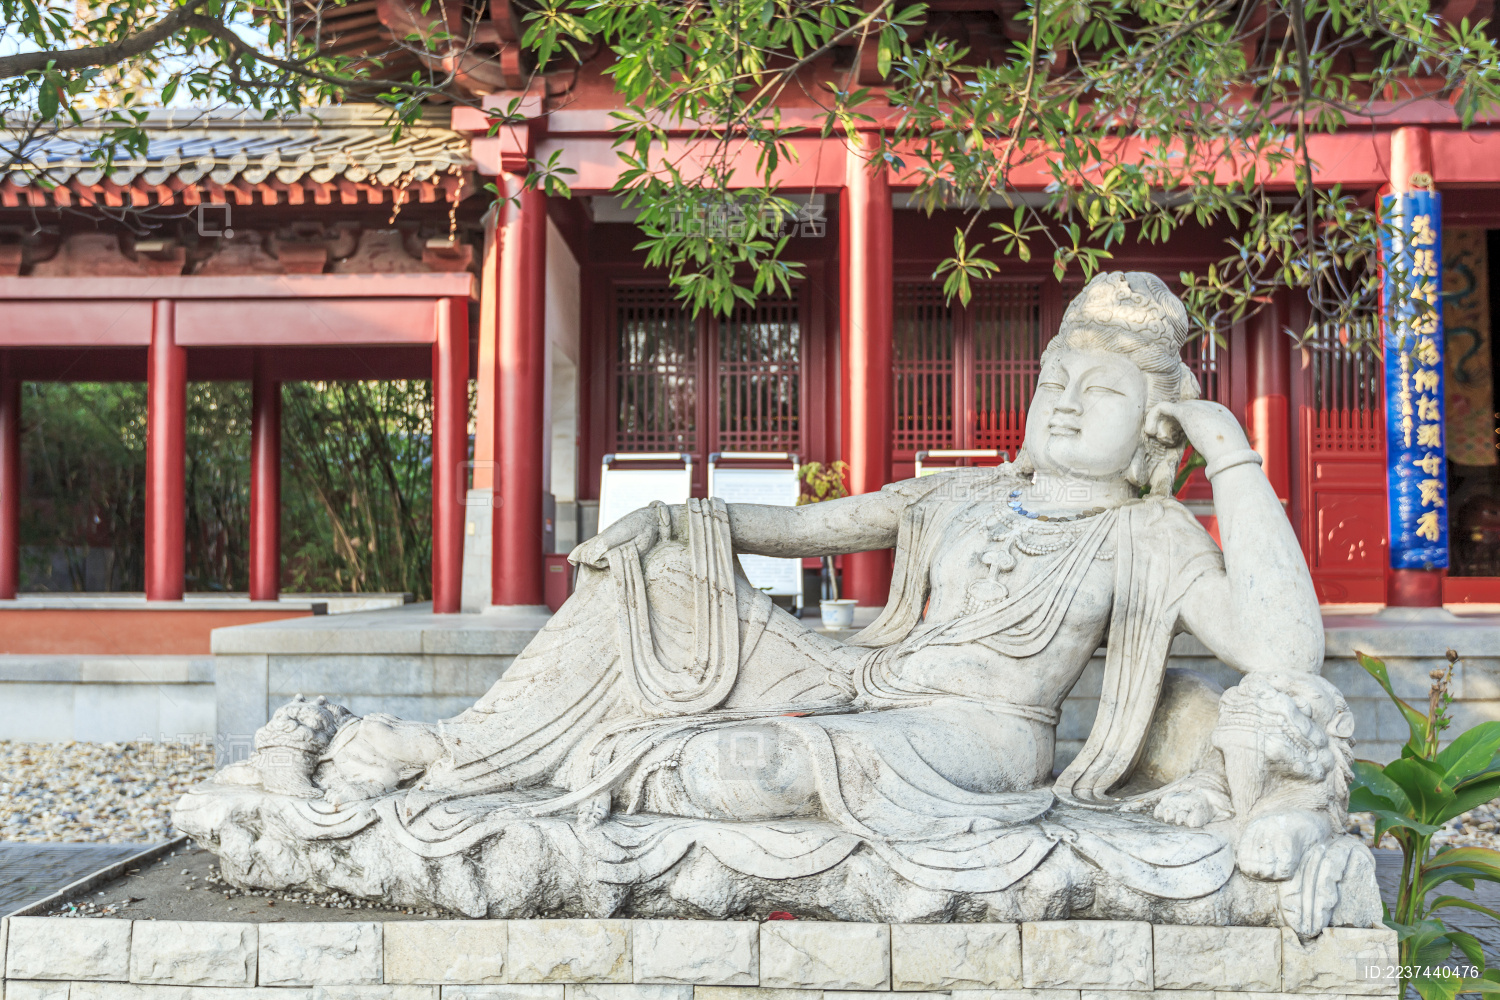 【携程攻略】南京美龄宫景点,美龄宫，位于南京市区东郊四方城以东200米的小红山上，正式名称是“…